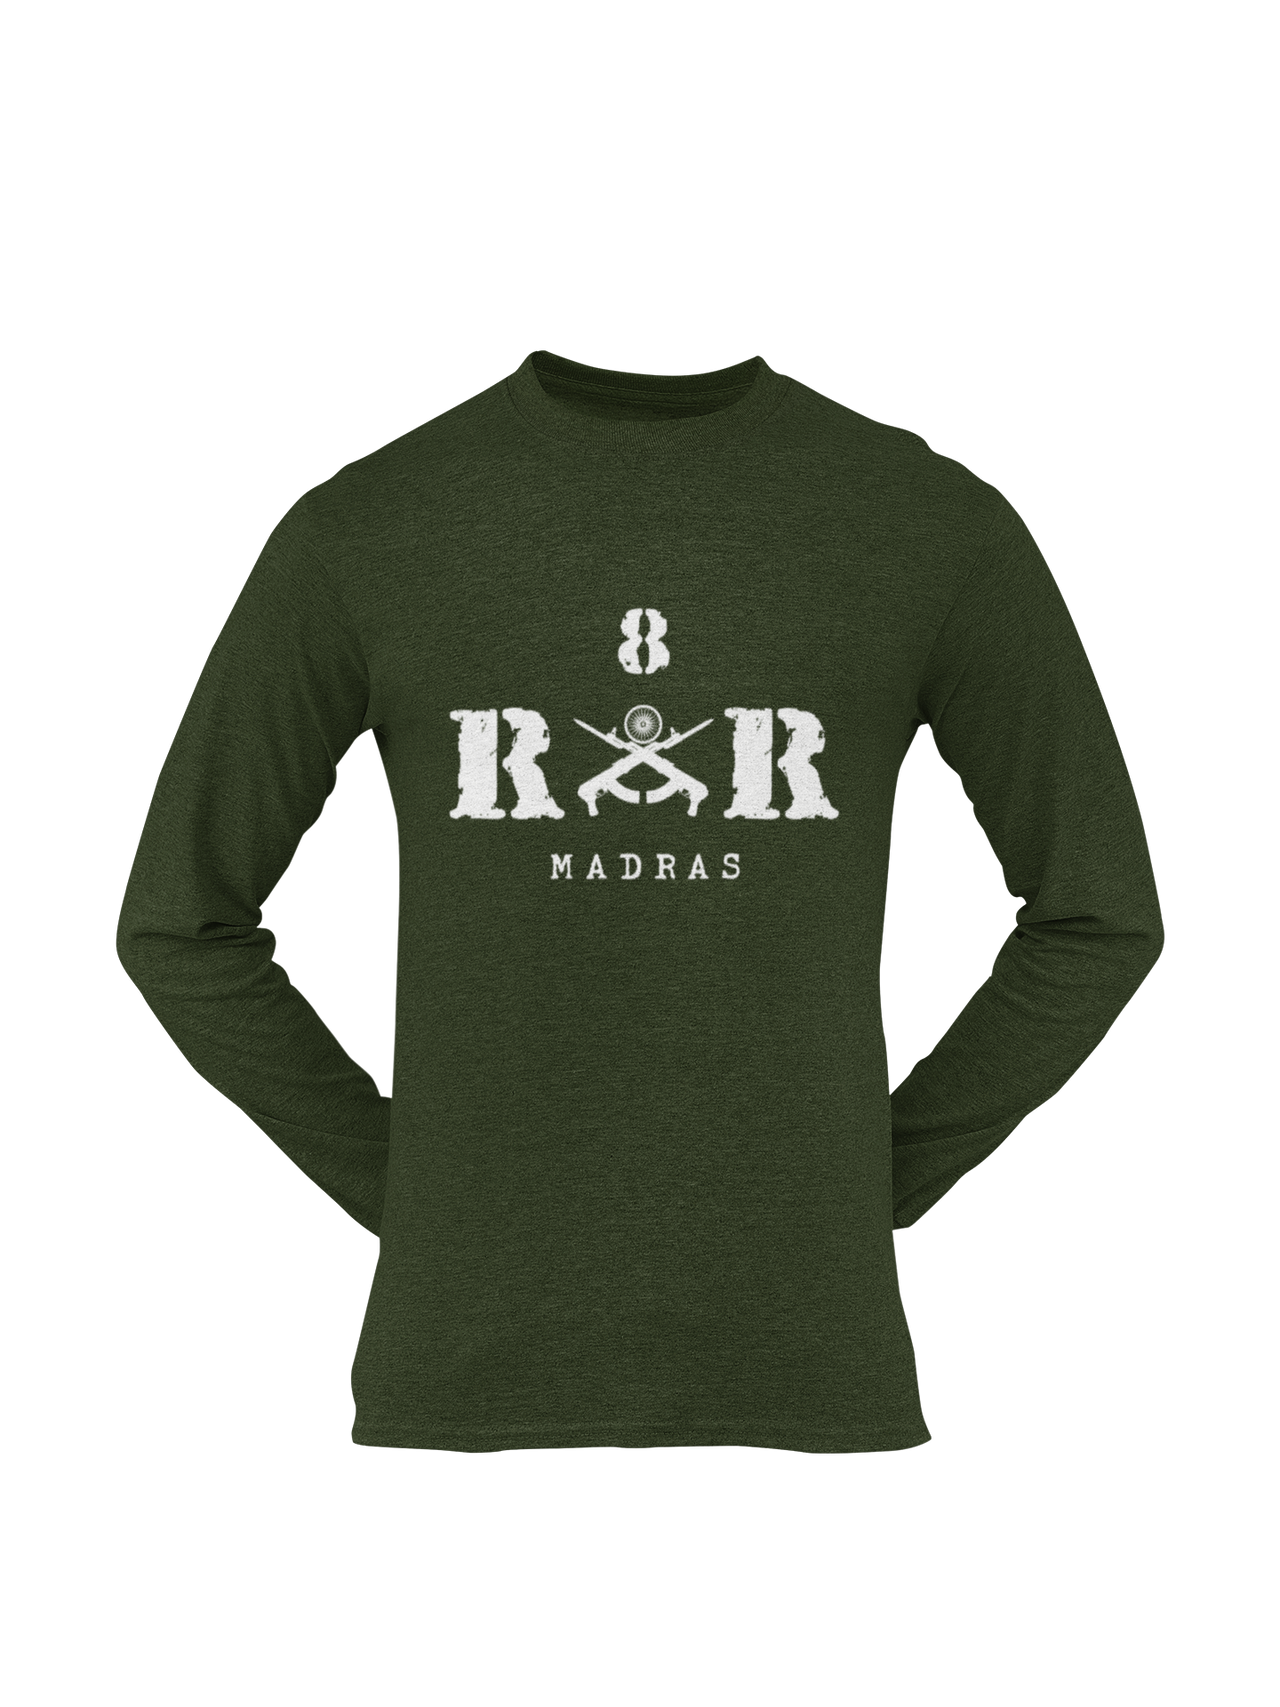 Rashtriya Rifles T-shirt - 8 RR Madras (Men)